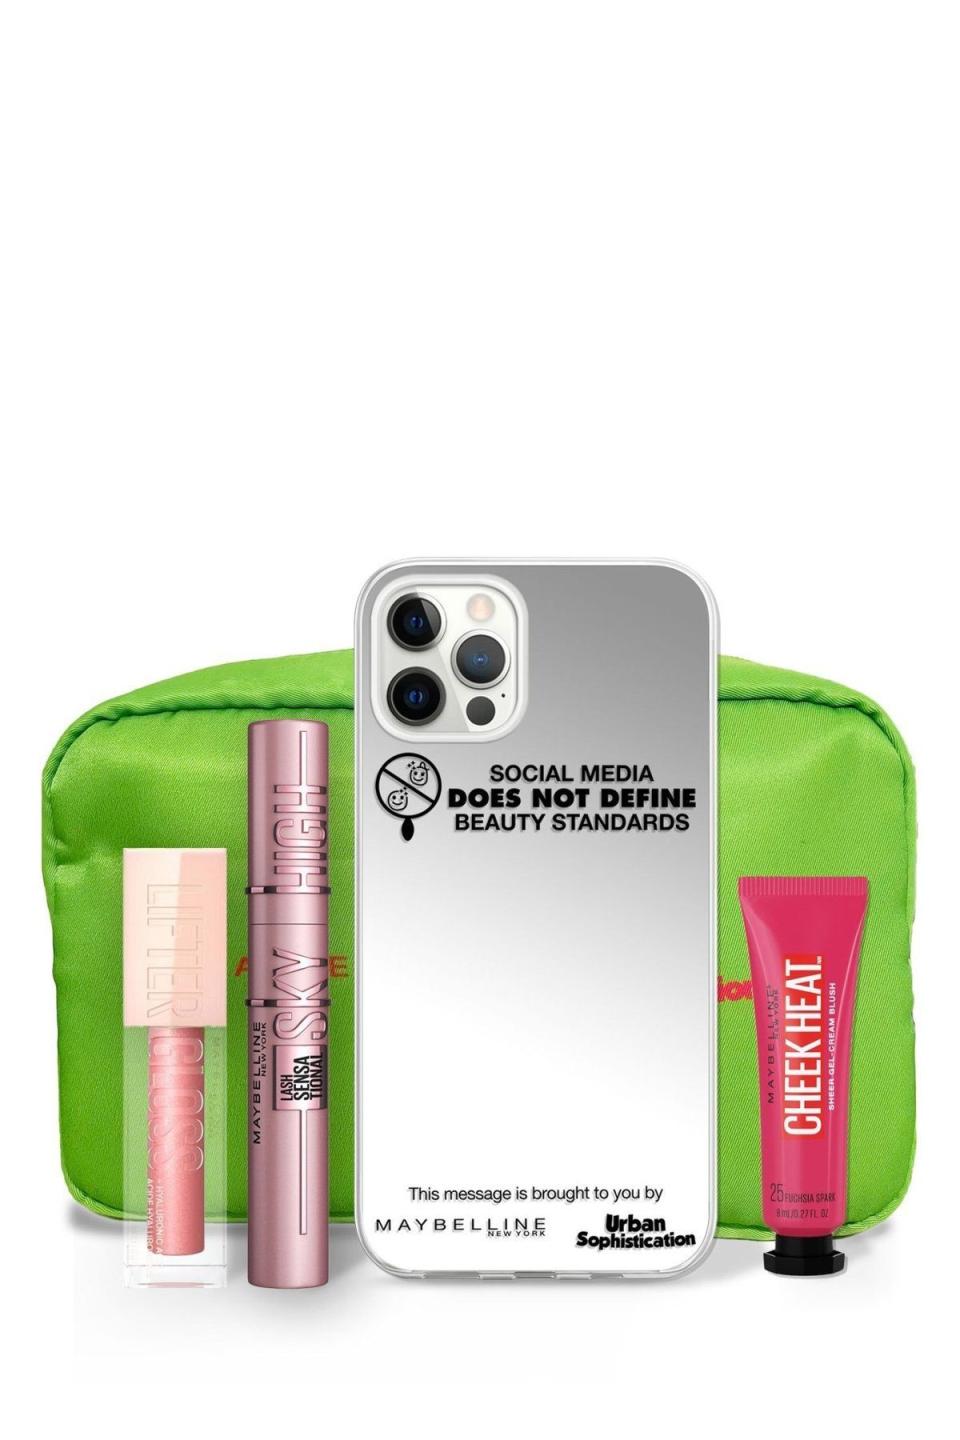 iPhone Case and Makeup Bundle